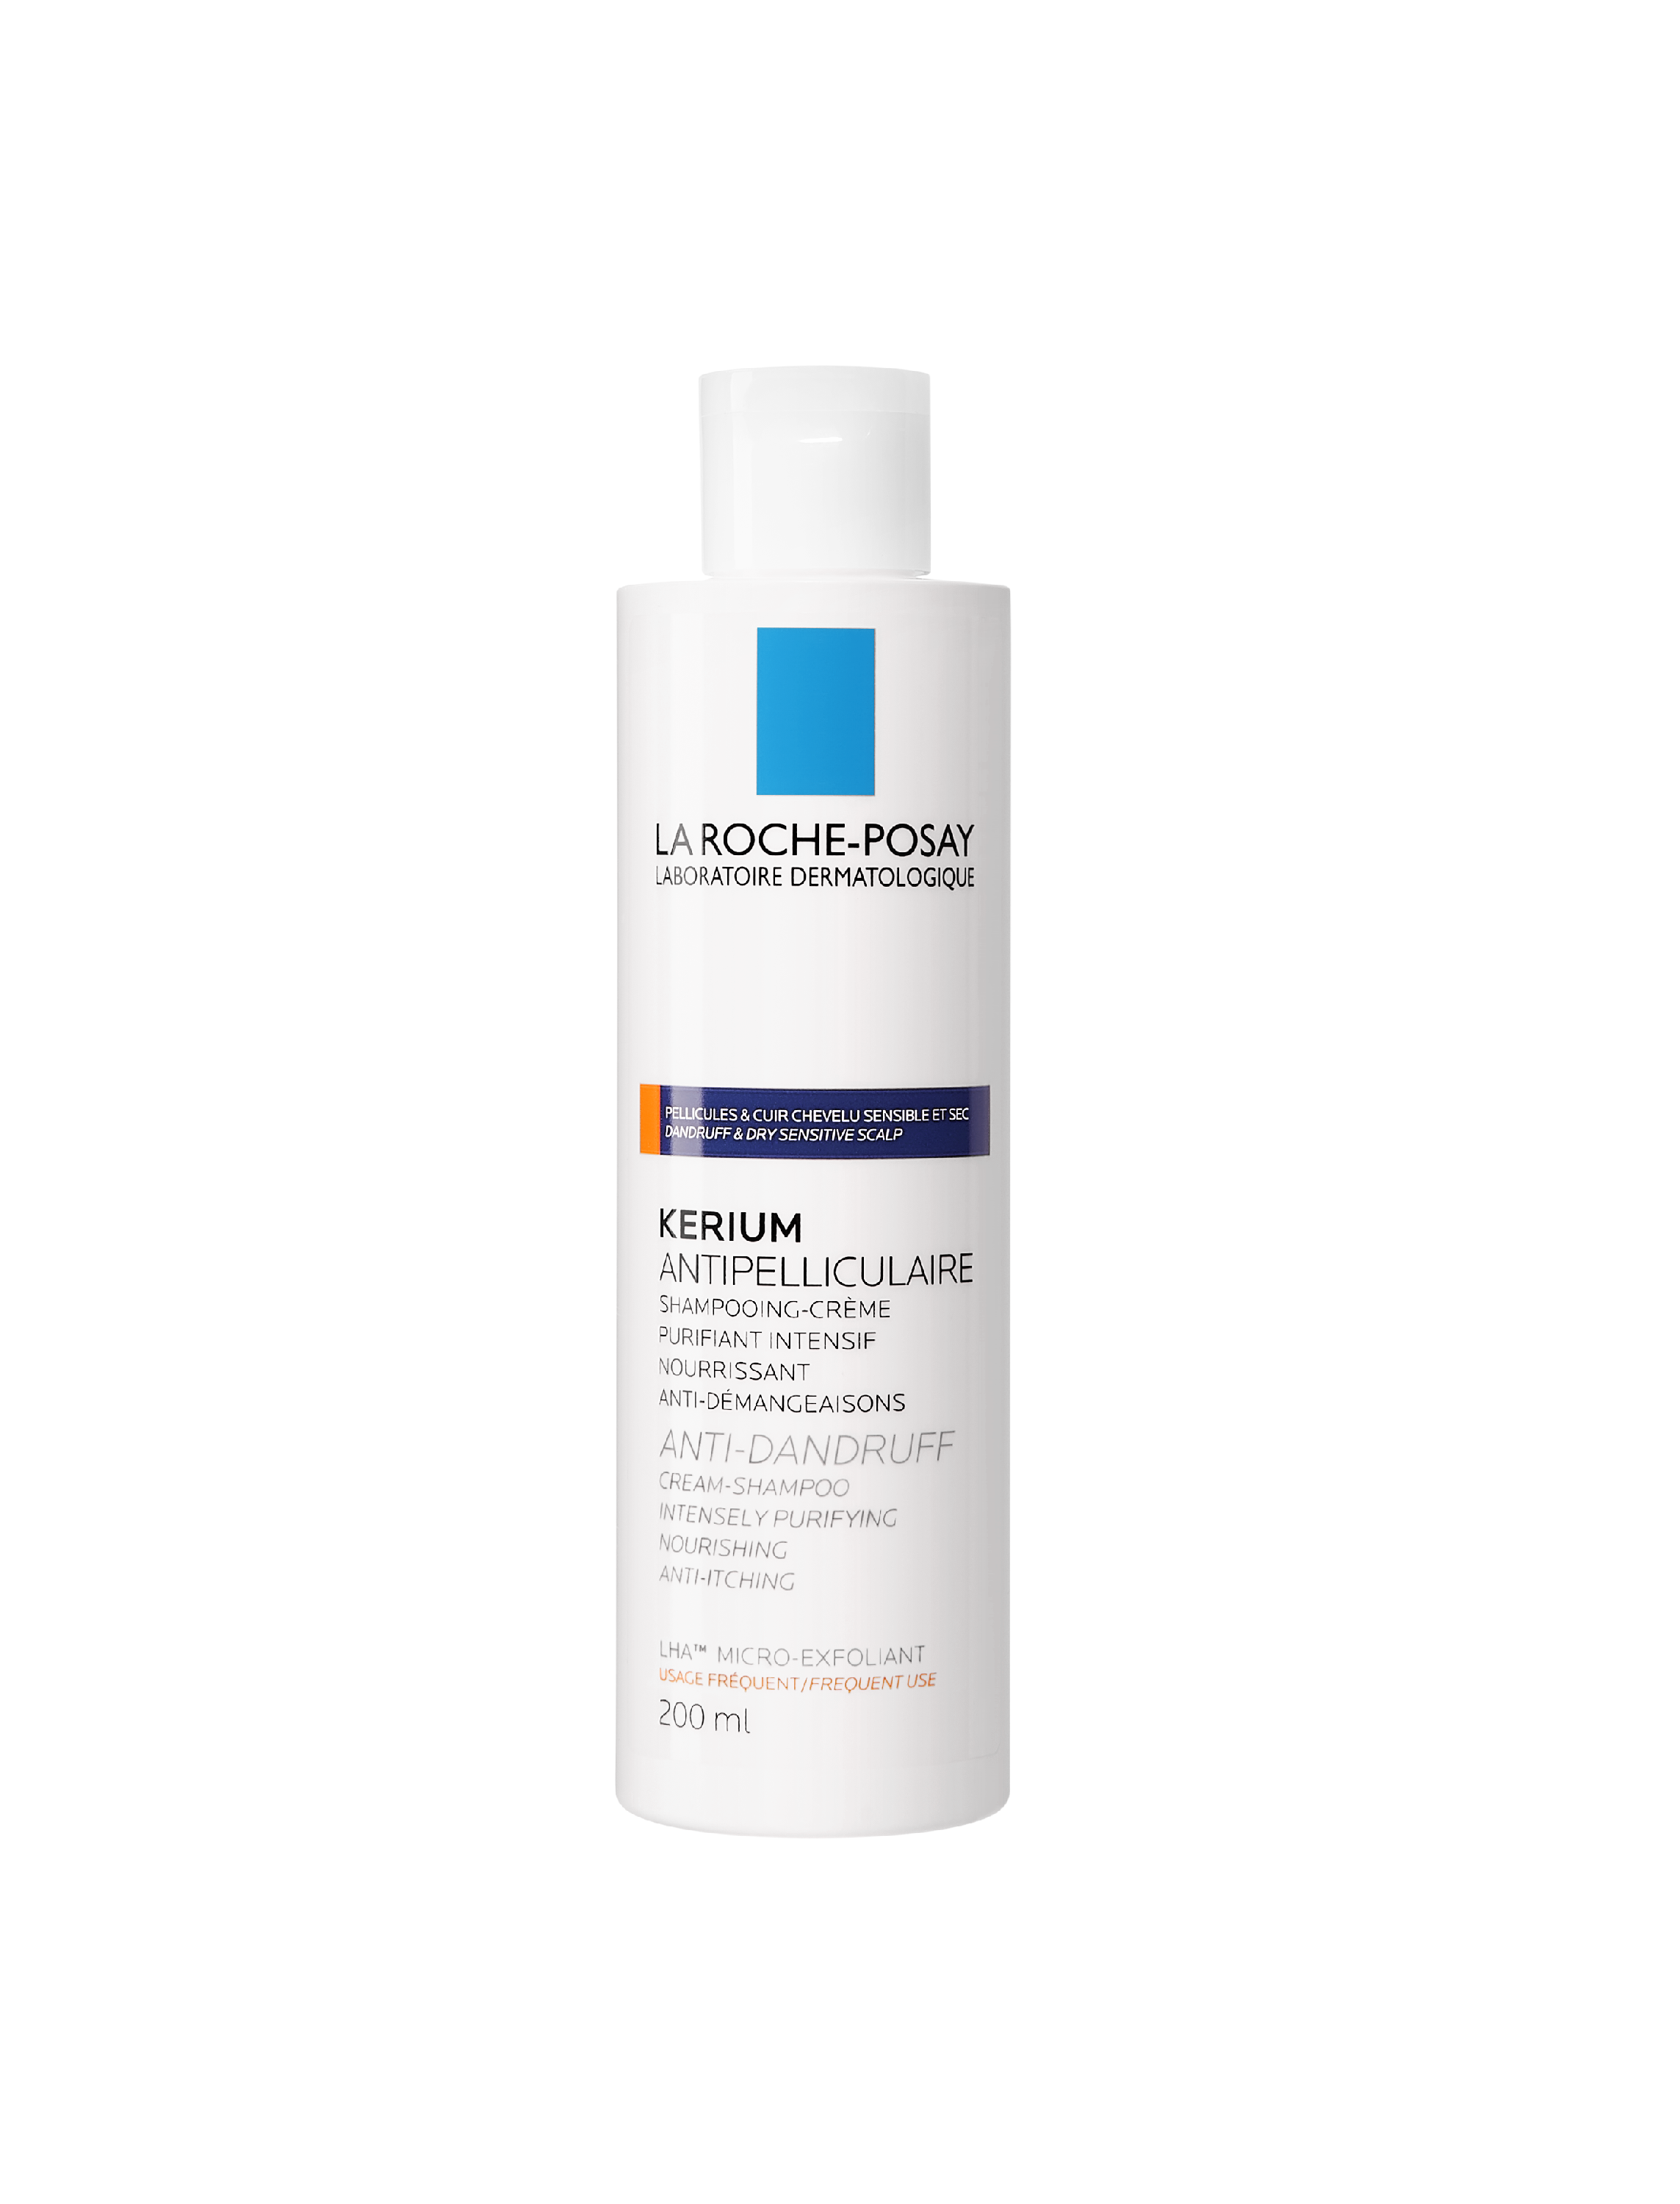 Kerium pellicules sèches shampooing antipelliculaire La Roche-Posay - flacon de 200 ml